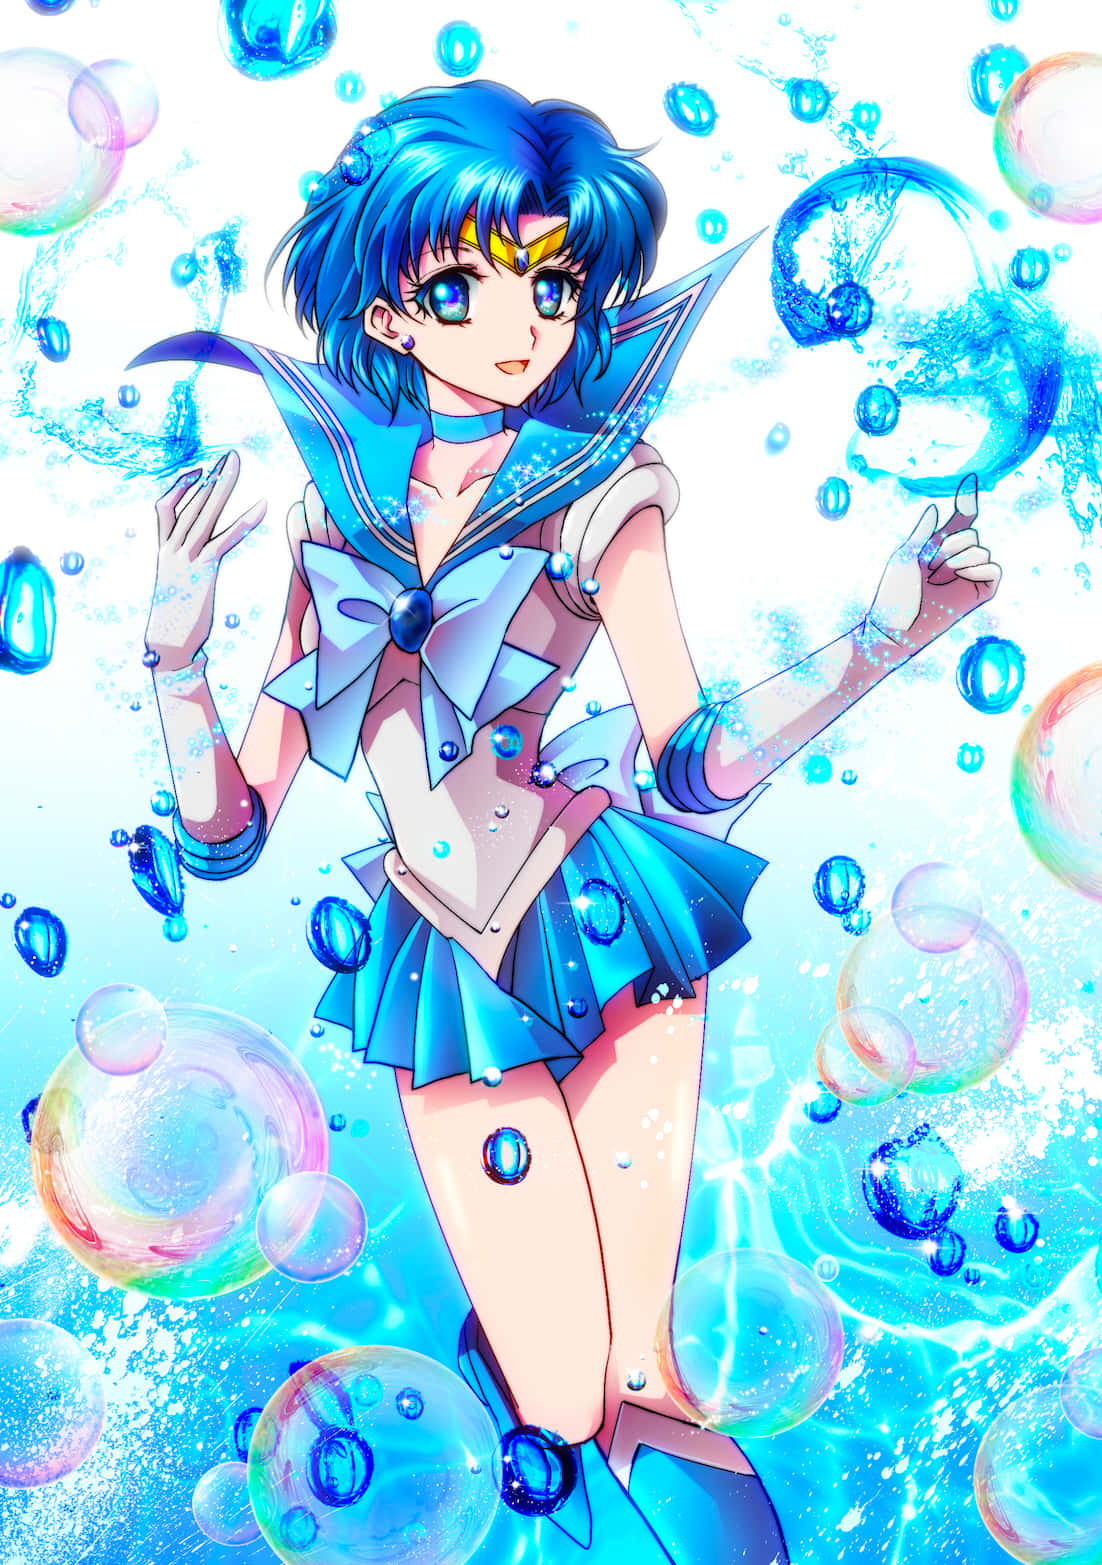 Sailor Mercury står stærkt med sine kammerater, beskytter dem med sin viden og magt. Wallpaper